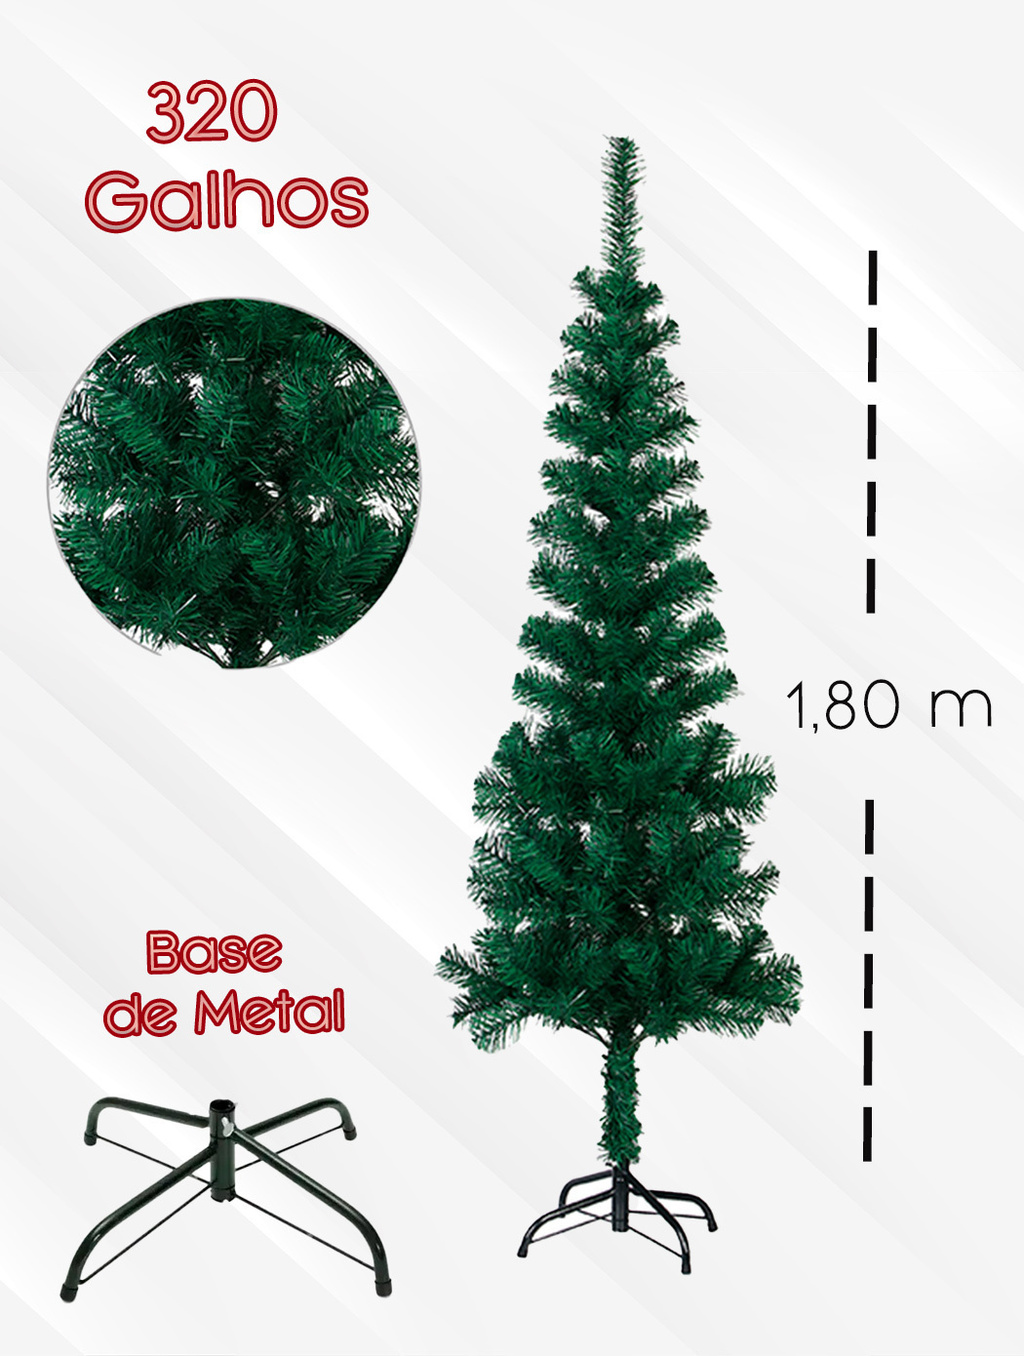 Arvore de Natal Furtacor Shine 1,80m 320 Galhos Premium